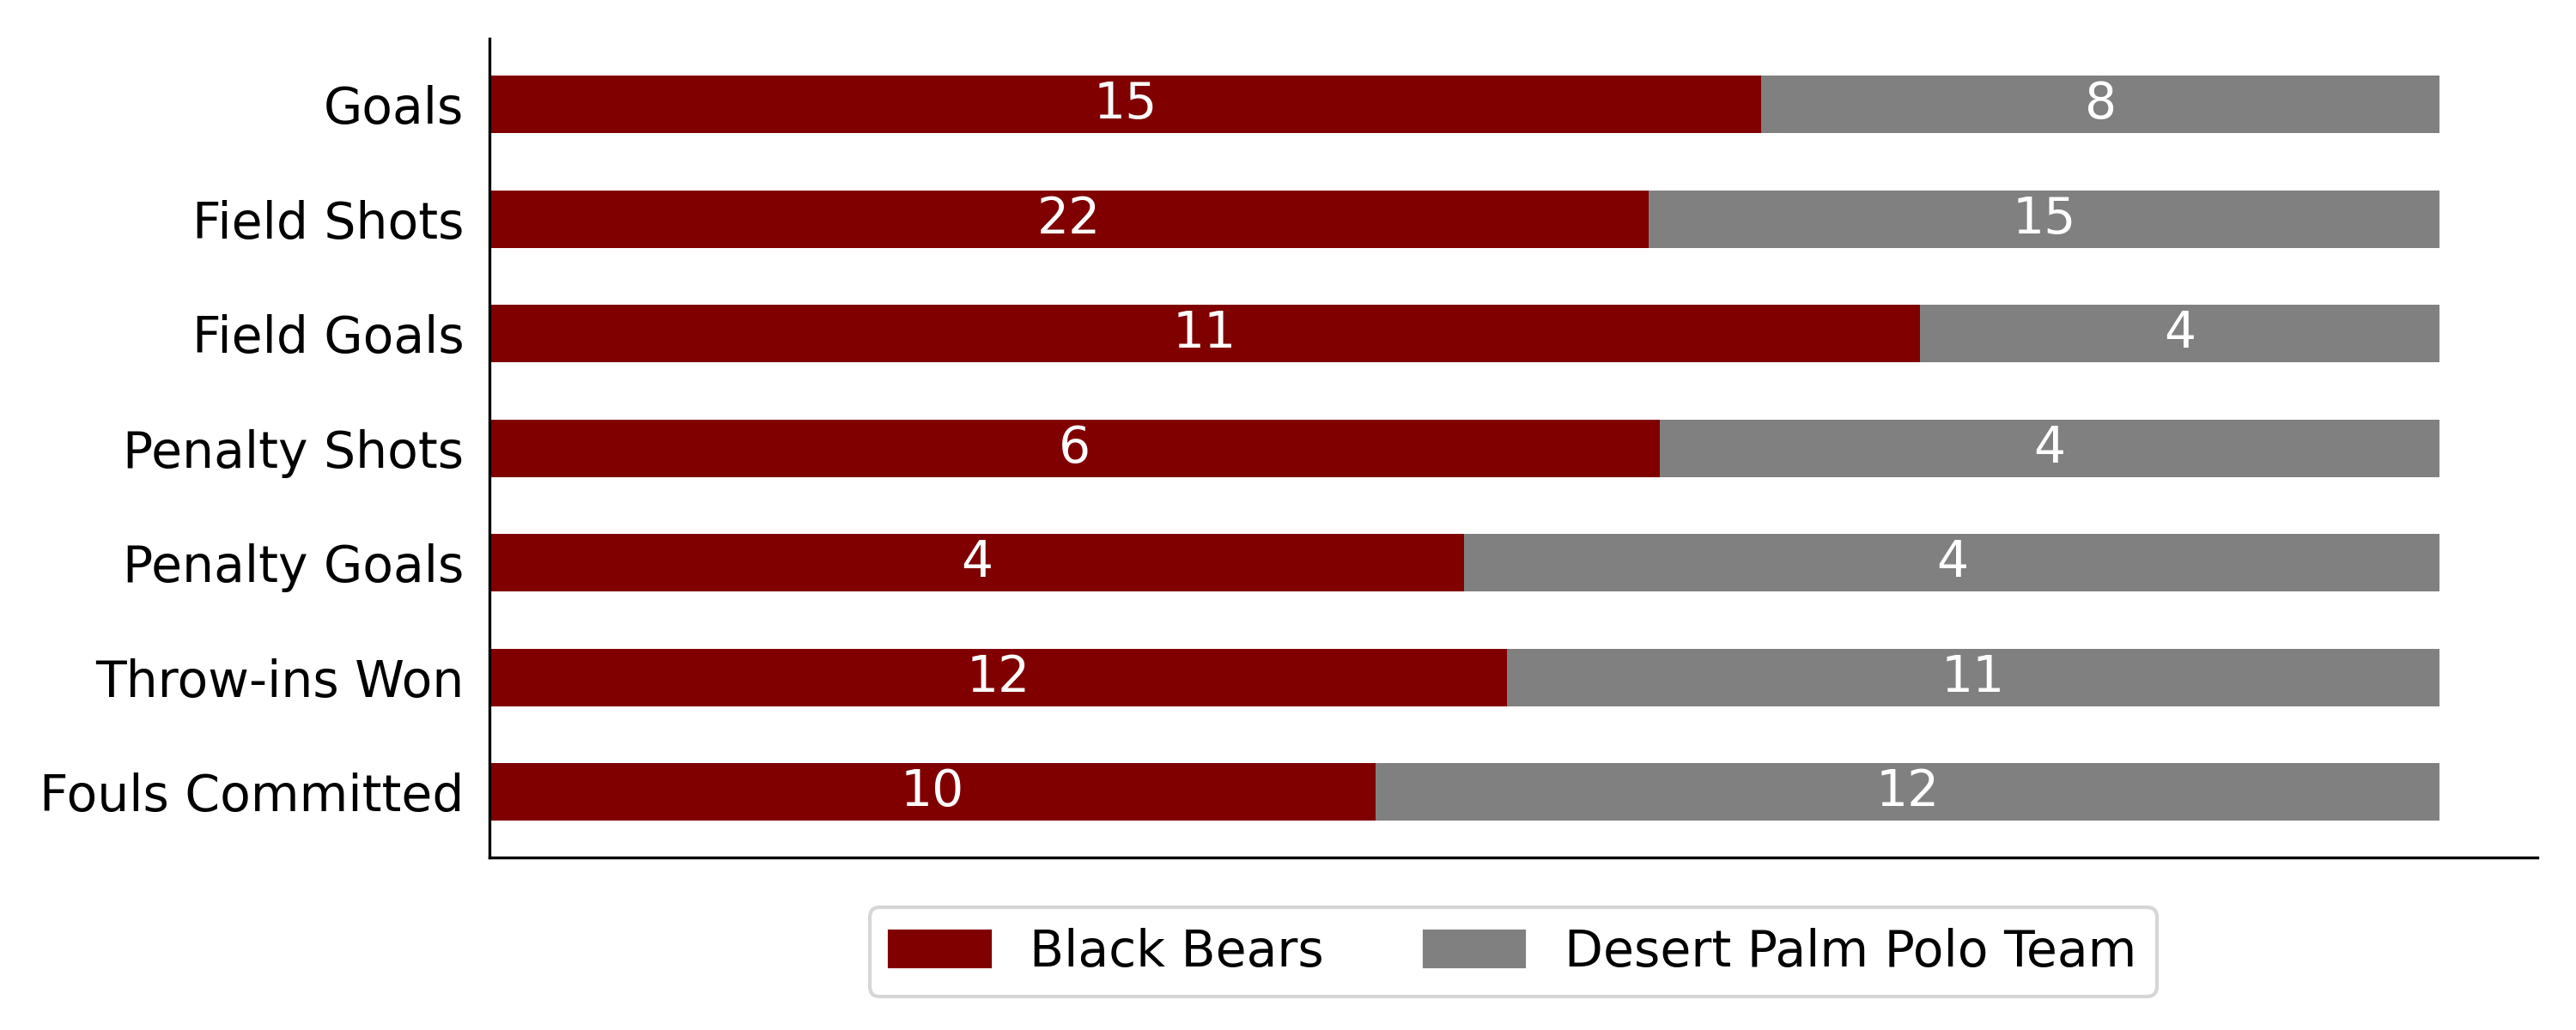 Black Bears vs Desert Palm Polo Team7